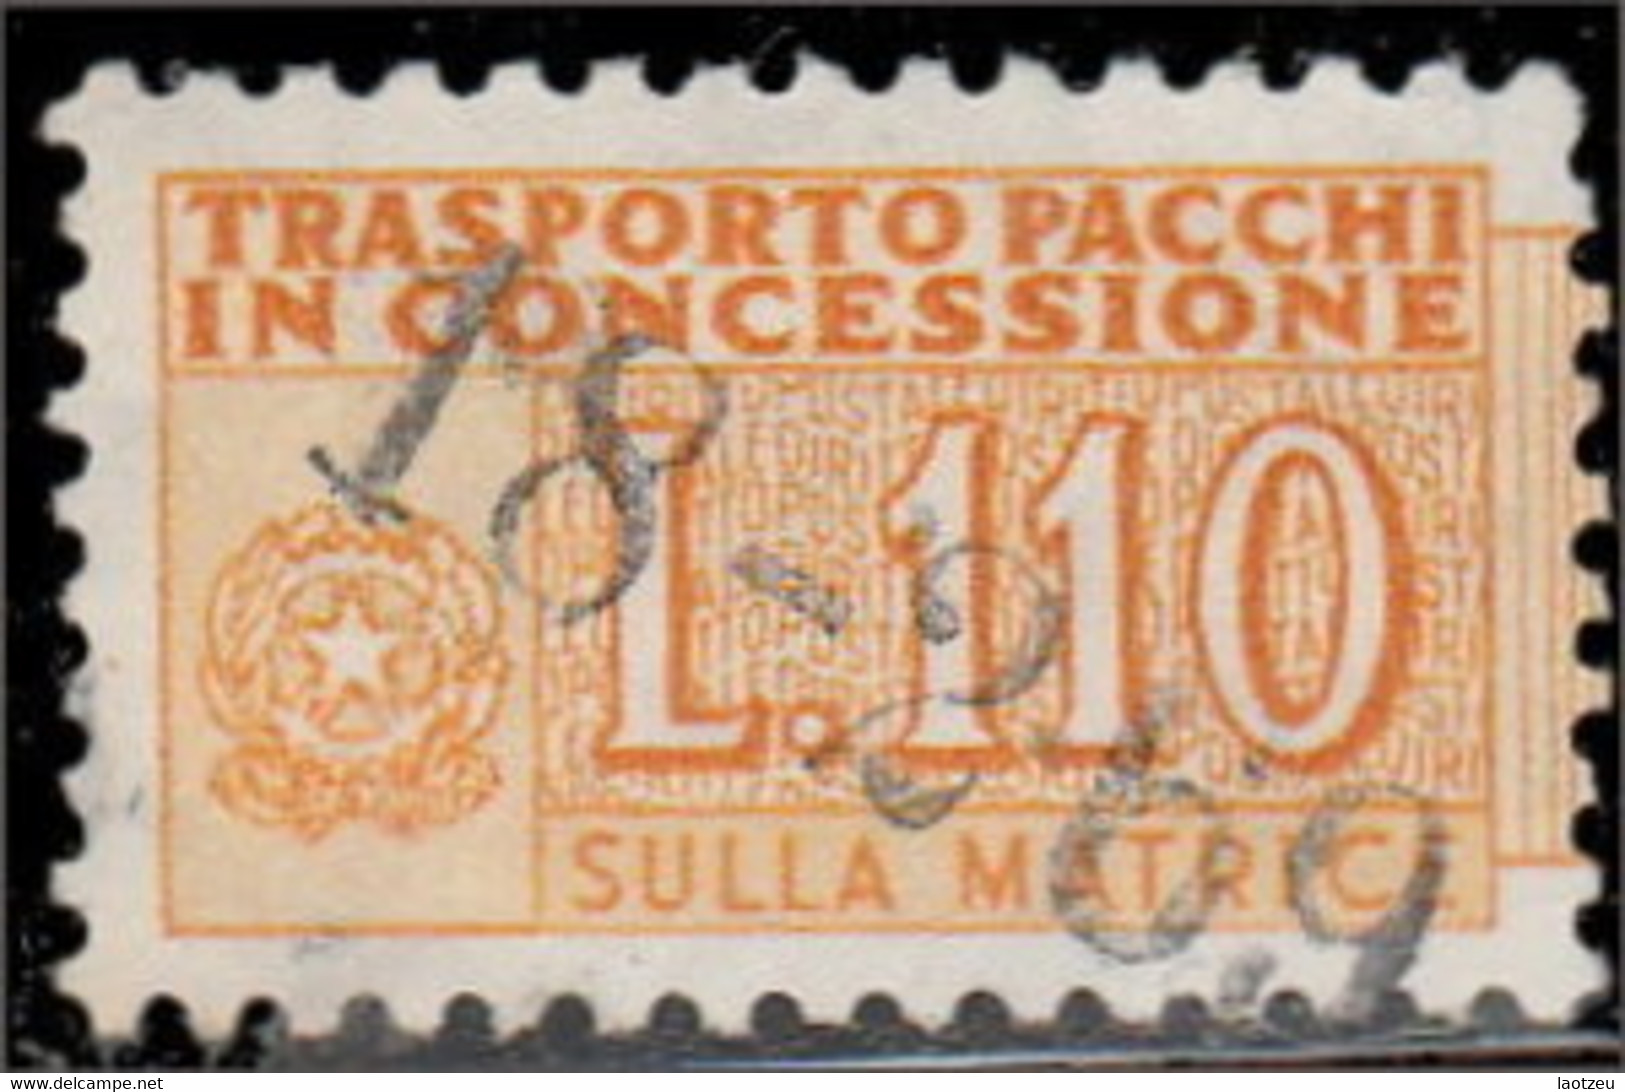 Italie Colis Postaux 1956. ~ CP 98  - 110 L. Chiffre - Colis-postaux